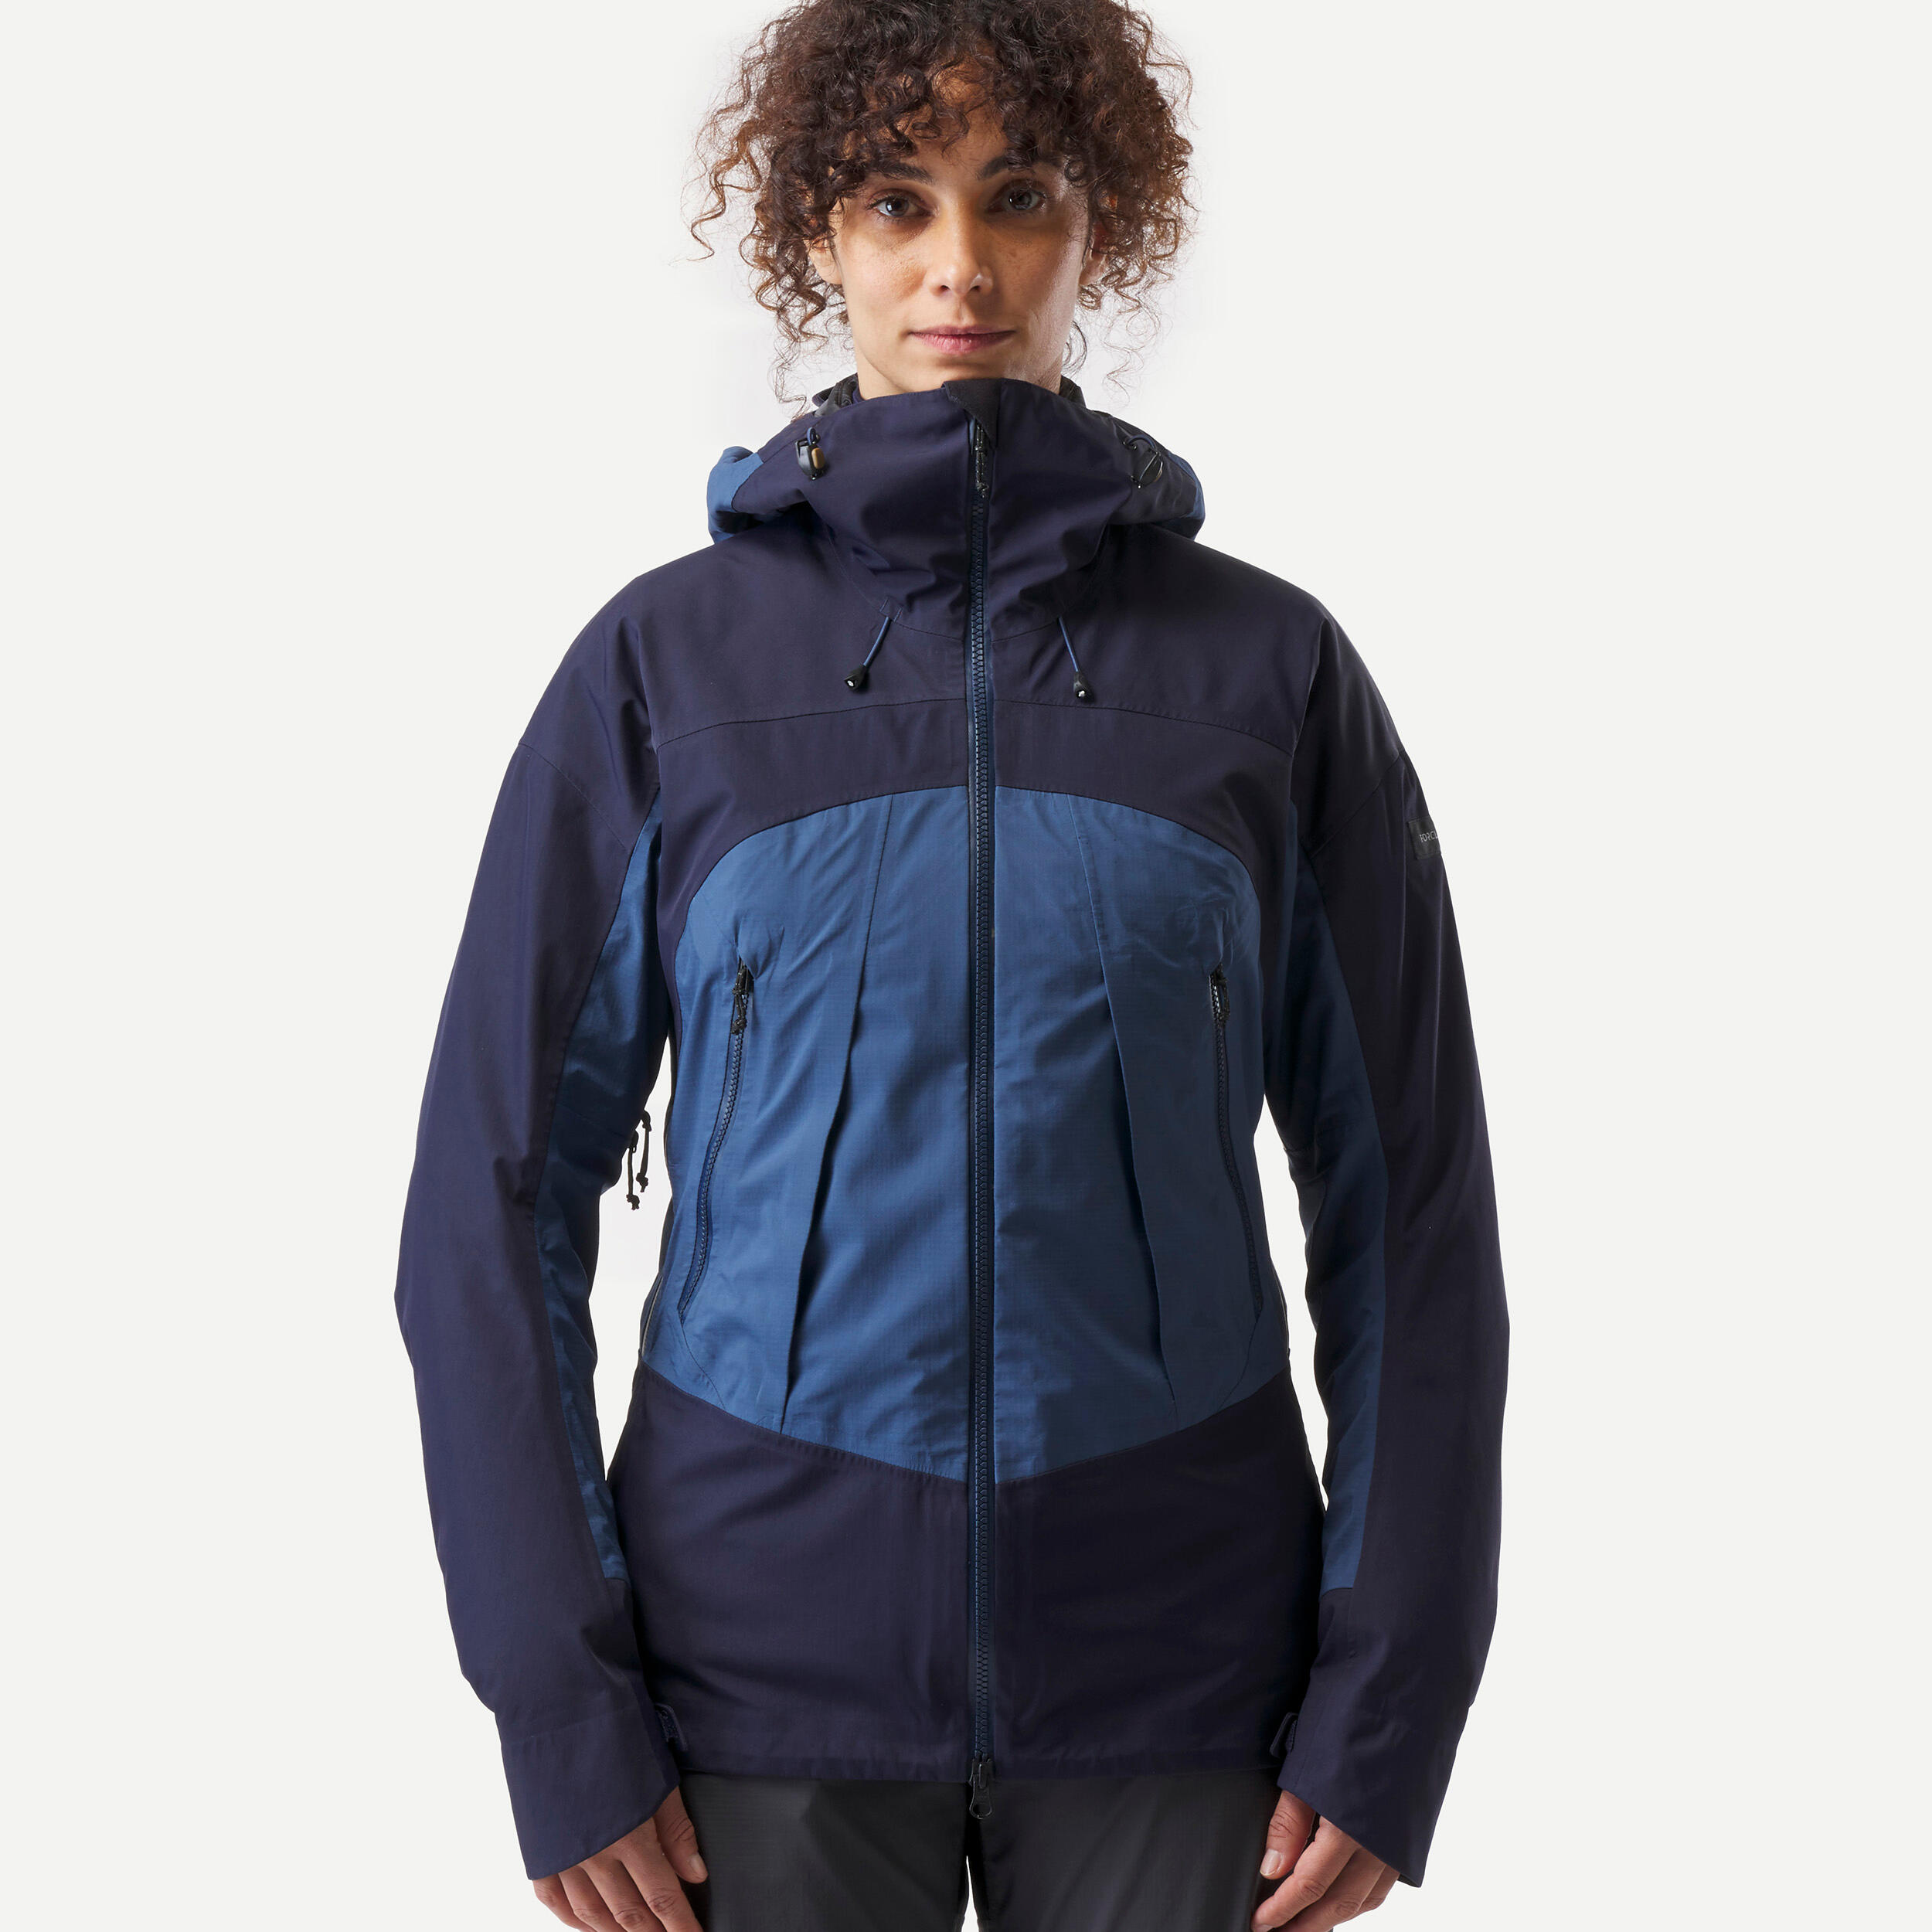 Women’s Waterproof Jacket – 20,000 mm – taped seams - MT500  5/14